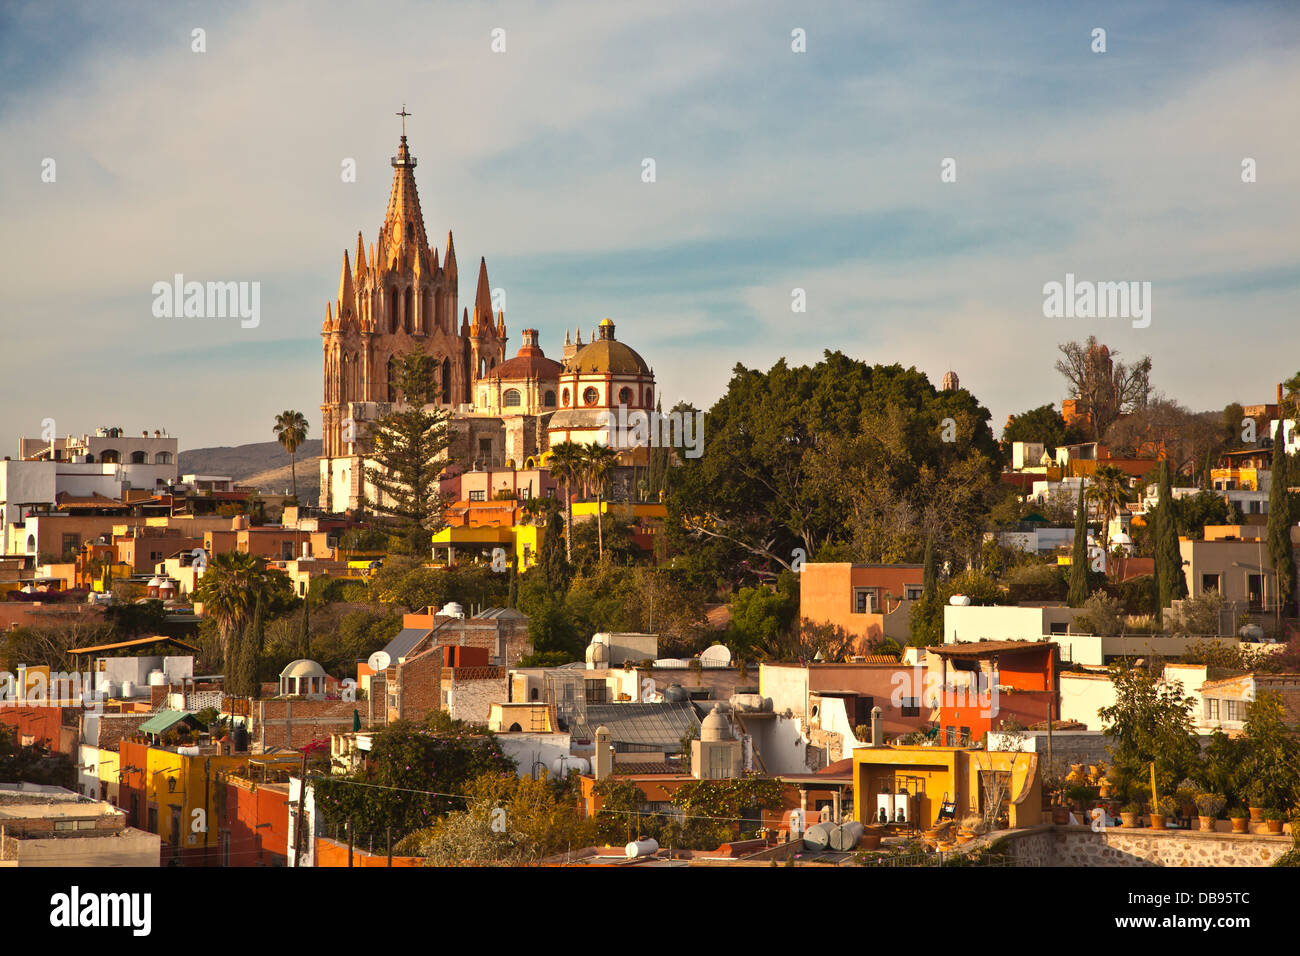 Die Kathedrale von SAN MIGUEL DE ALLENDE heißt La PARROQUIA und ist das Herzstück der Stadt - Mexiko Stockfoto